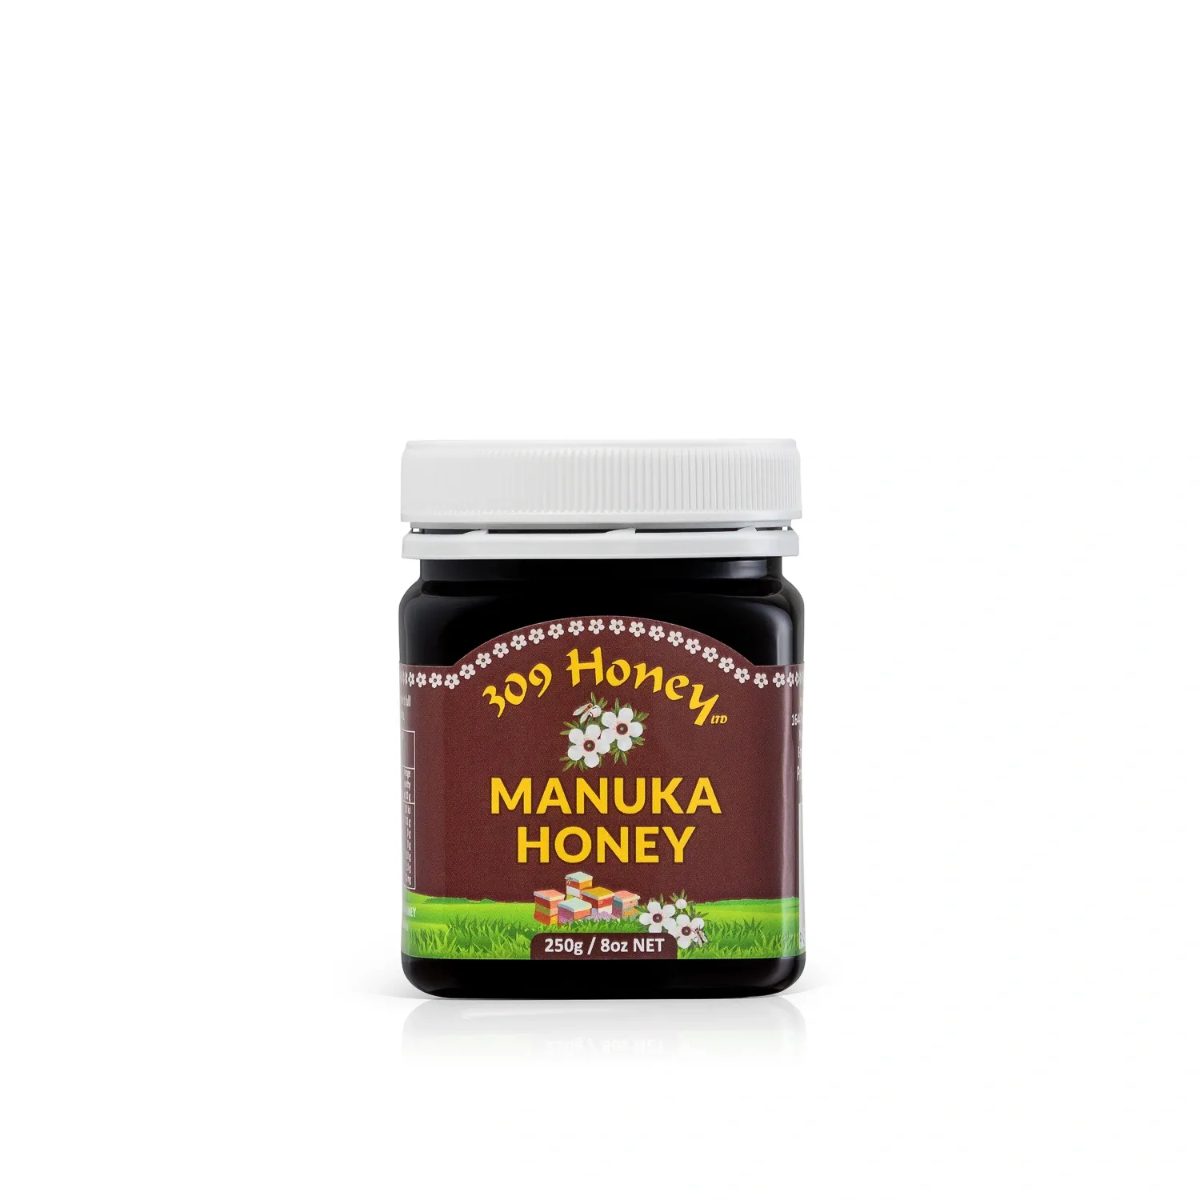 Manuka Honey 350+ MGO